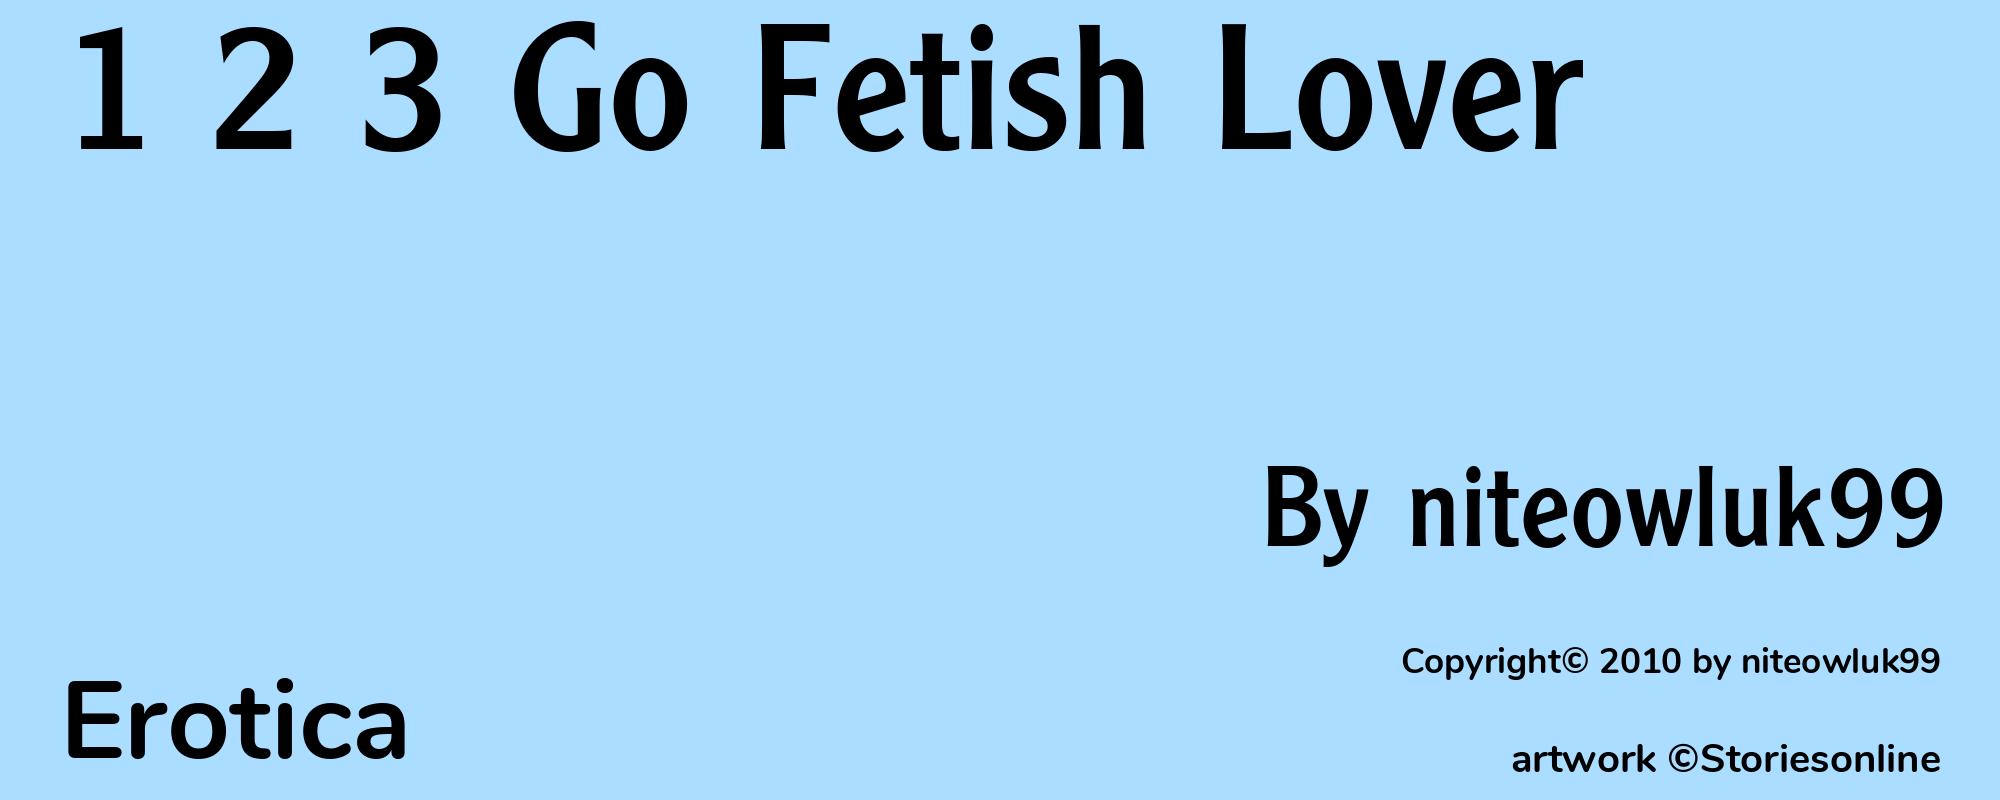 1 2 3 Go Fetish Lover - Cover